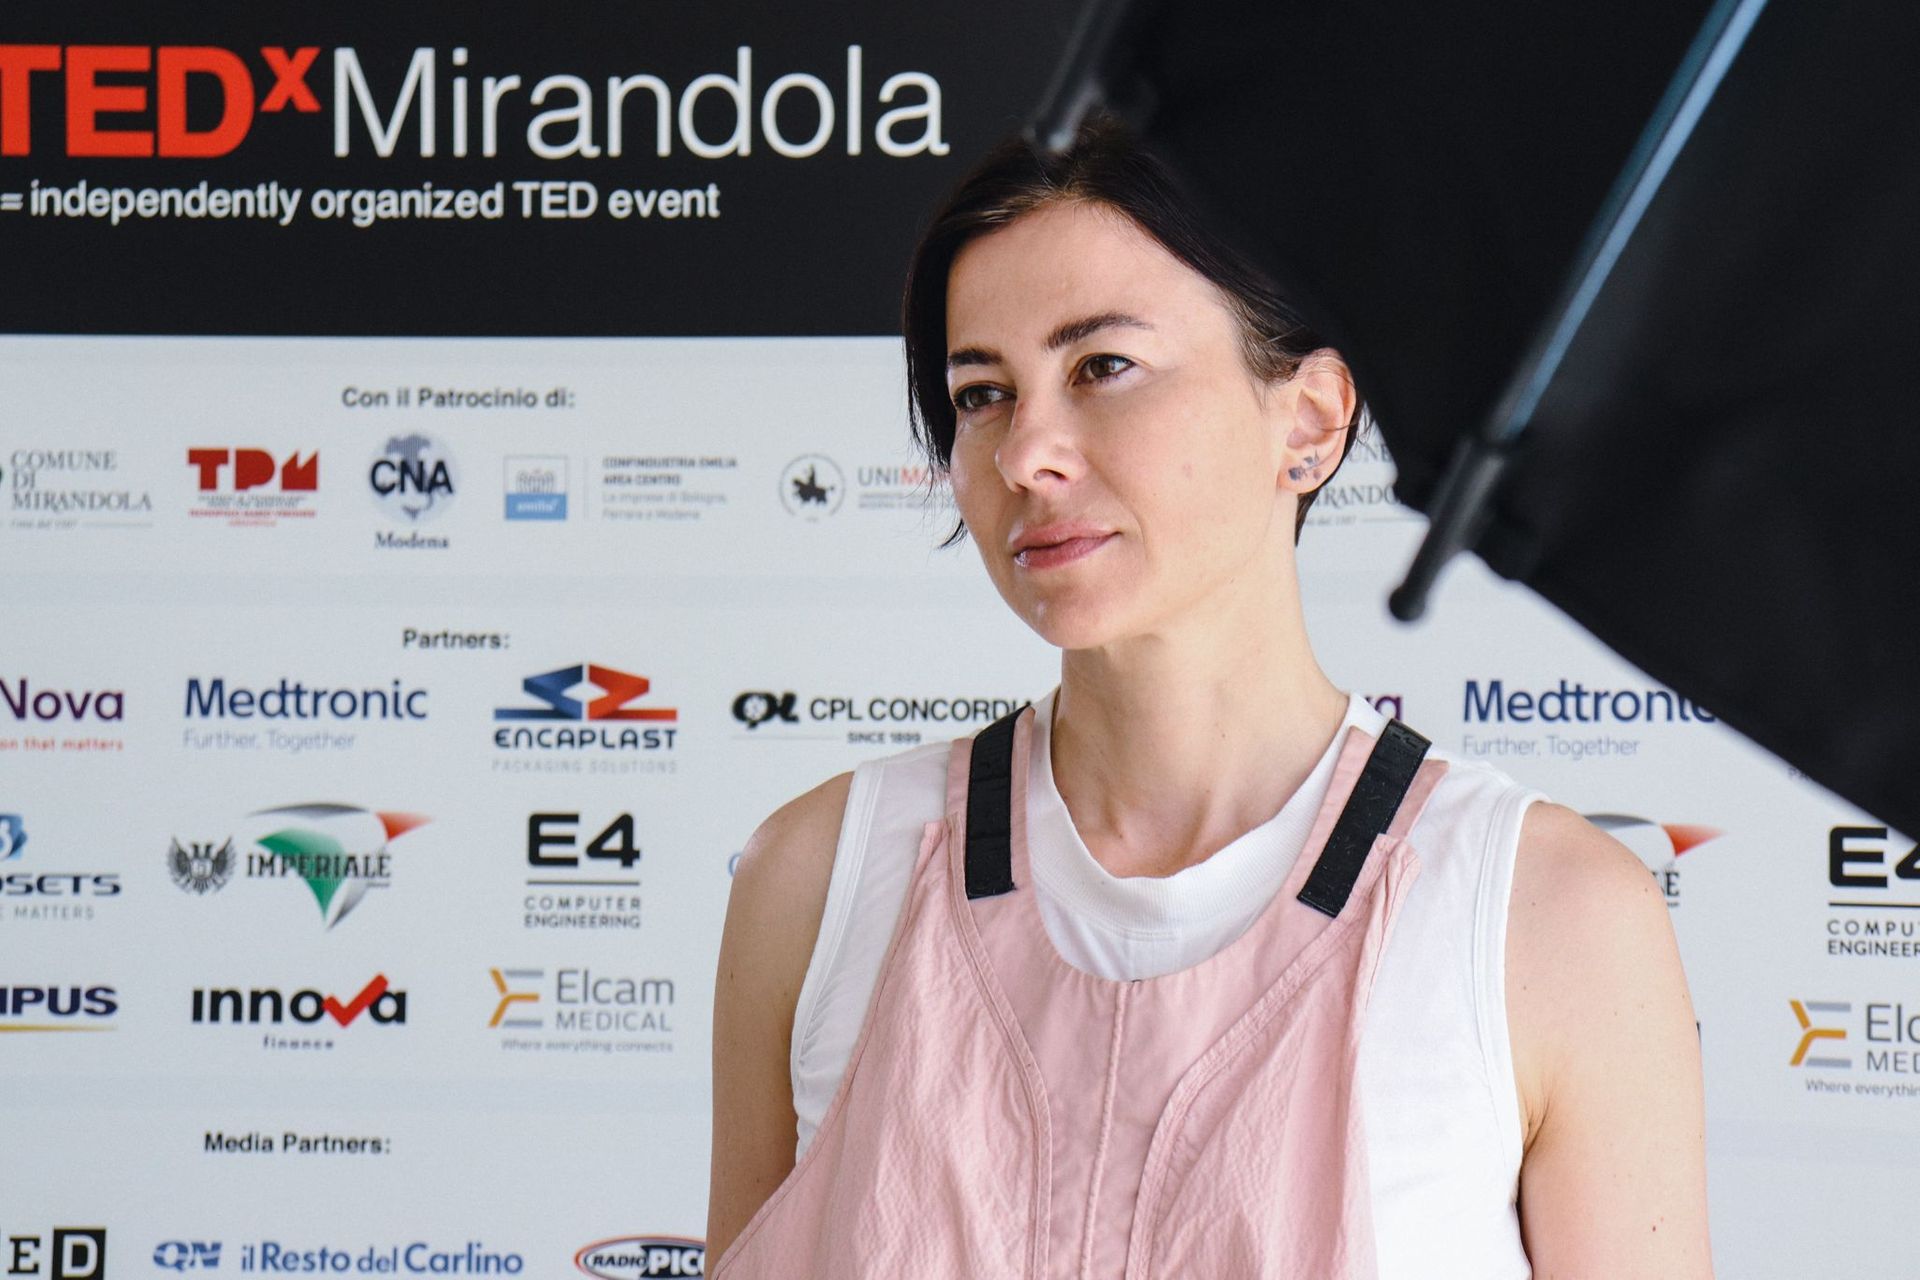 Themeluesja e Fondacionit Maverx, Francesca Veronesi është vajza e Marios, pionierit të distriktit biomjekësor në vitin 1962: ajo ishte folëse në edicionin e parë të TEDx Mirandola.